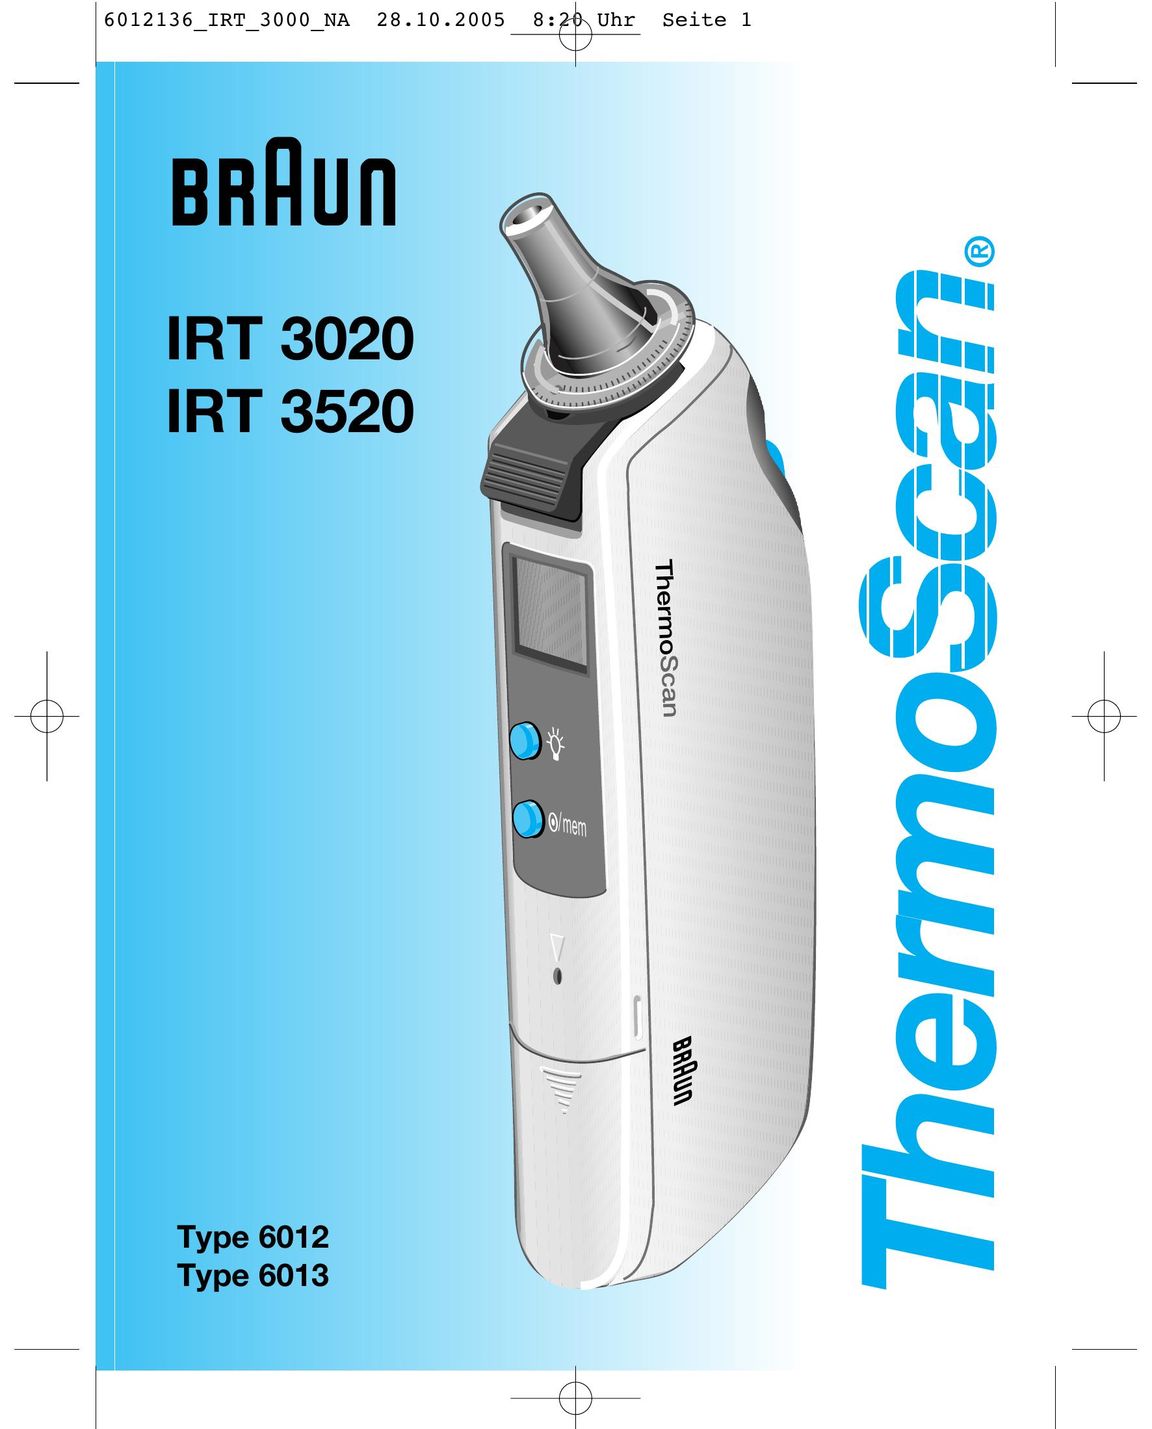 Braun IRT 3020 Range User Manual